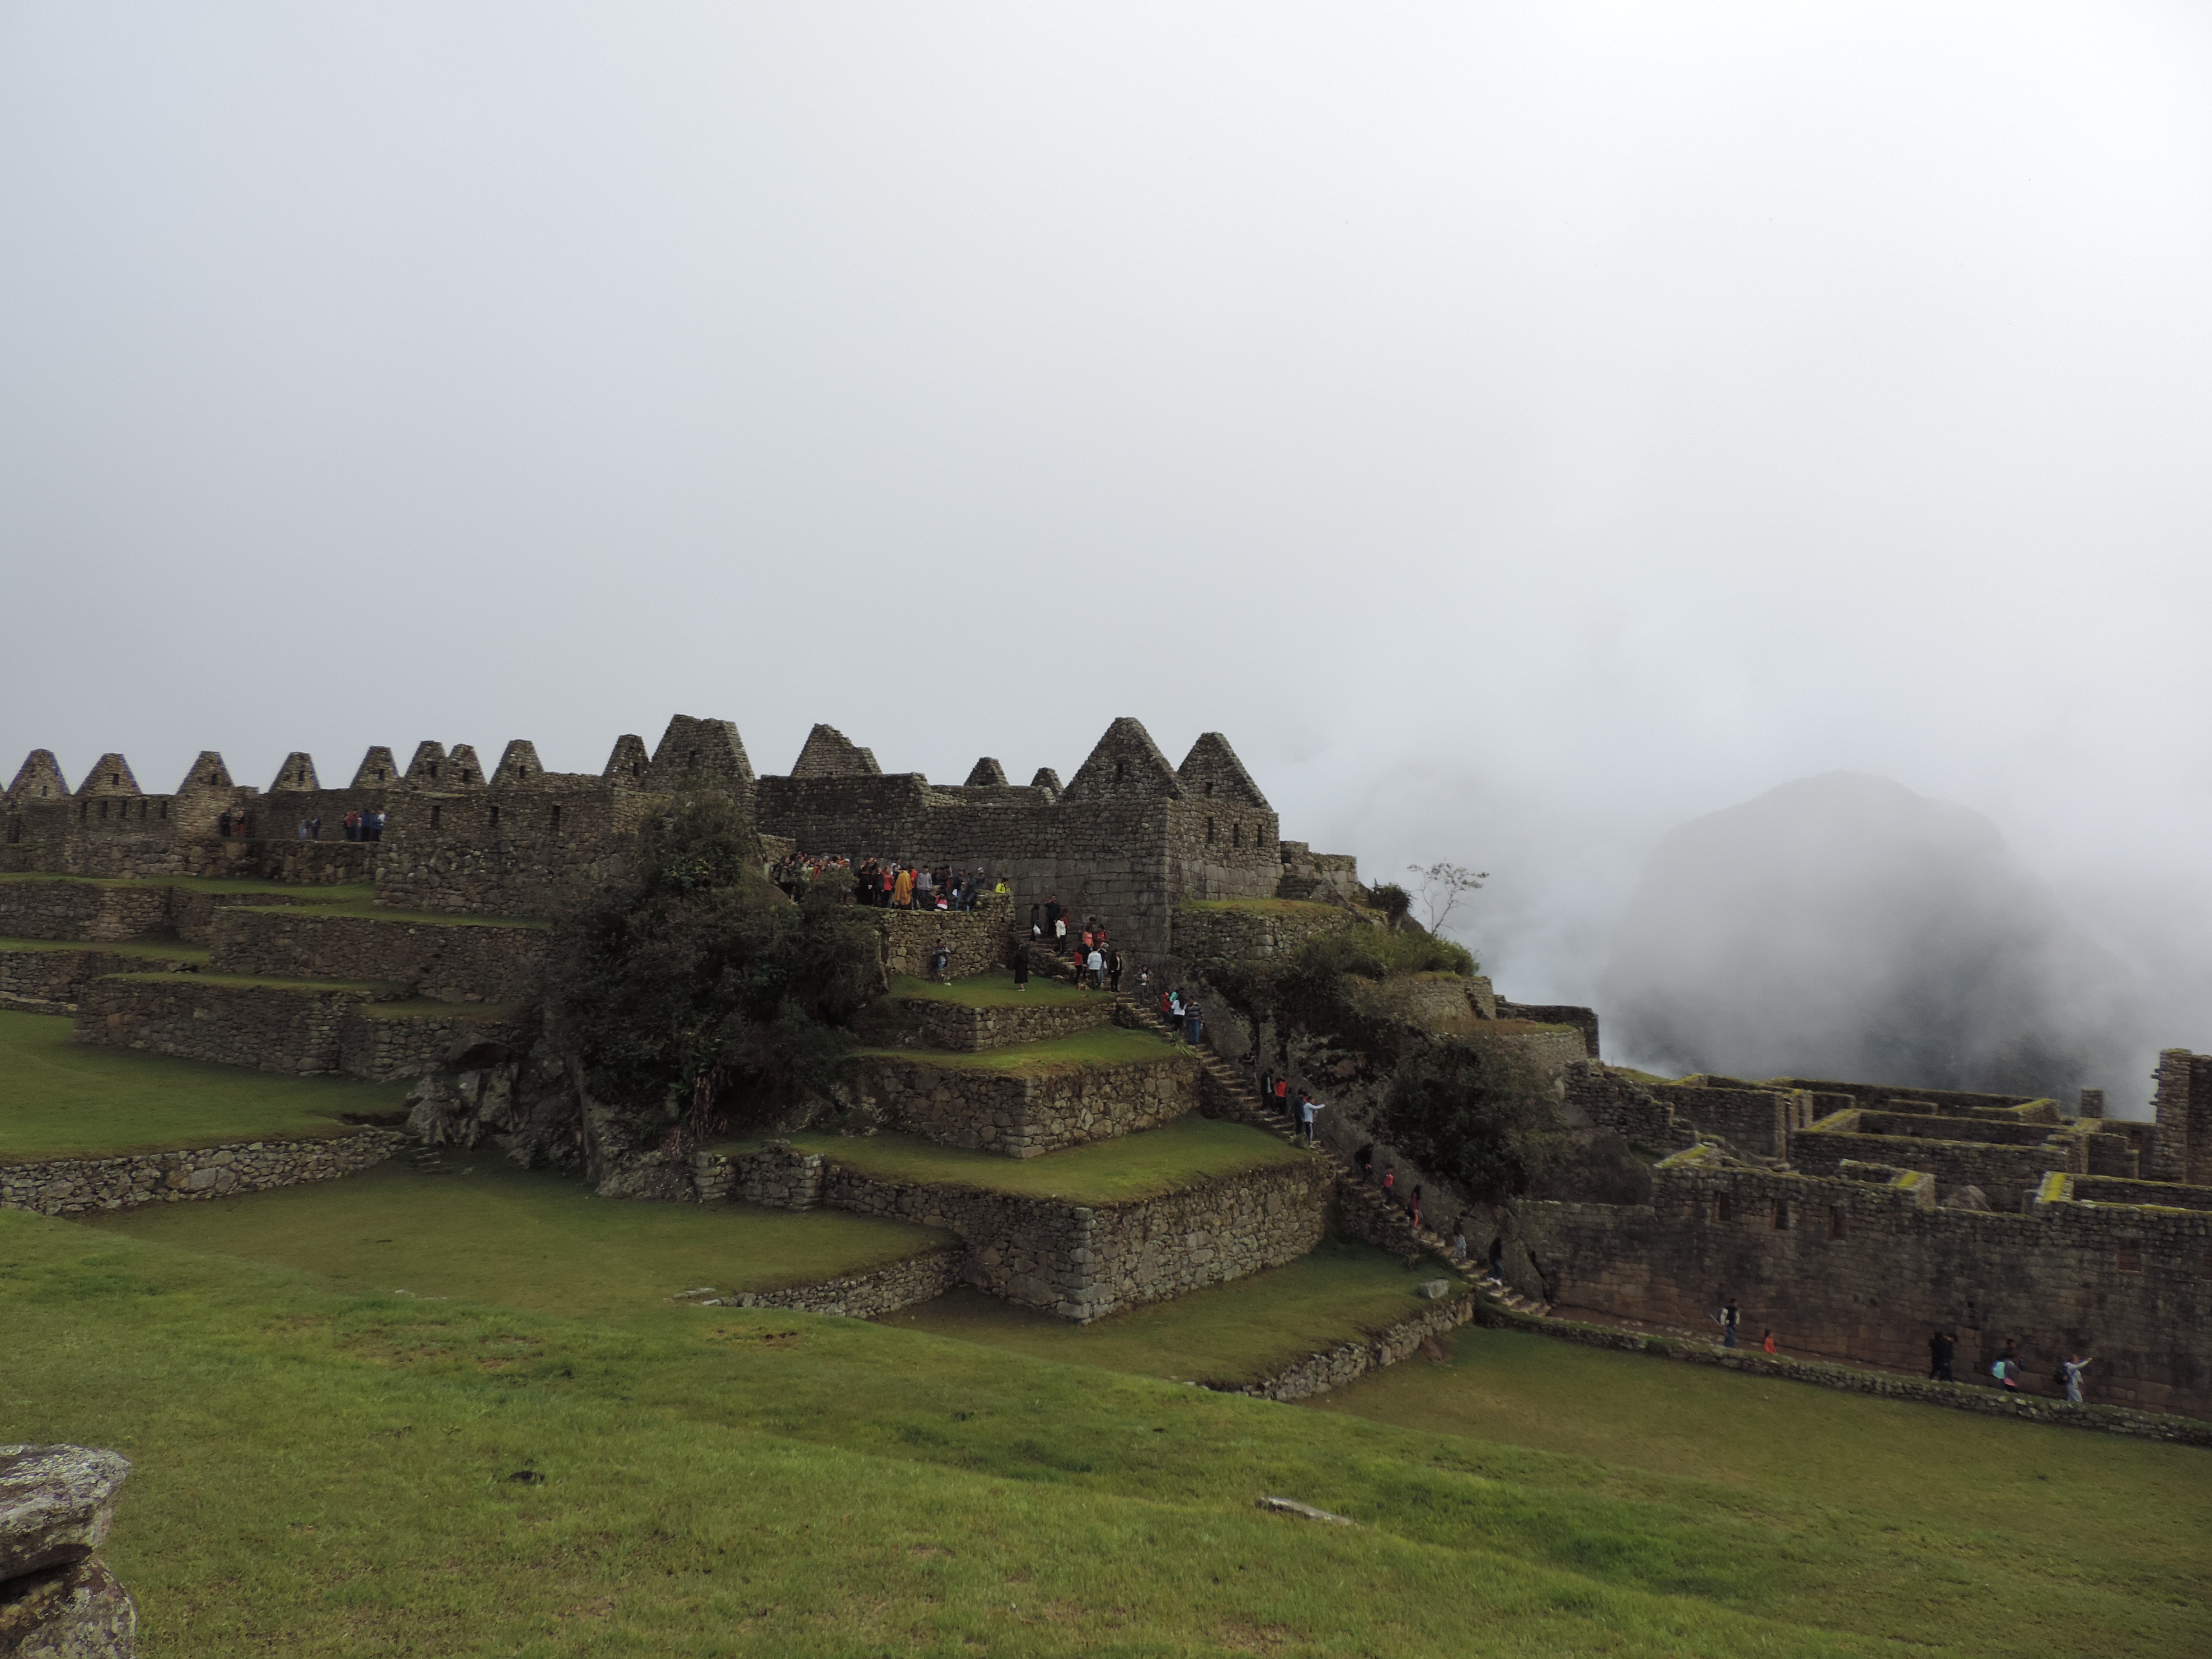 Free of cusco, Macchu Picchu, machupicchu